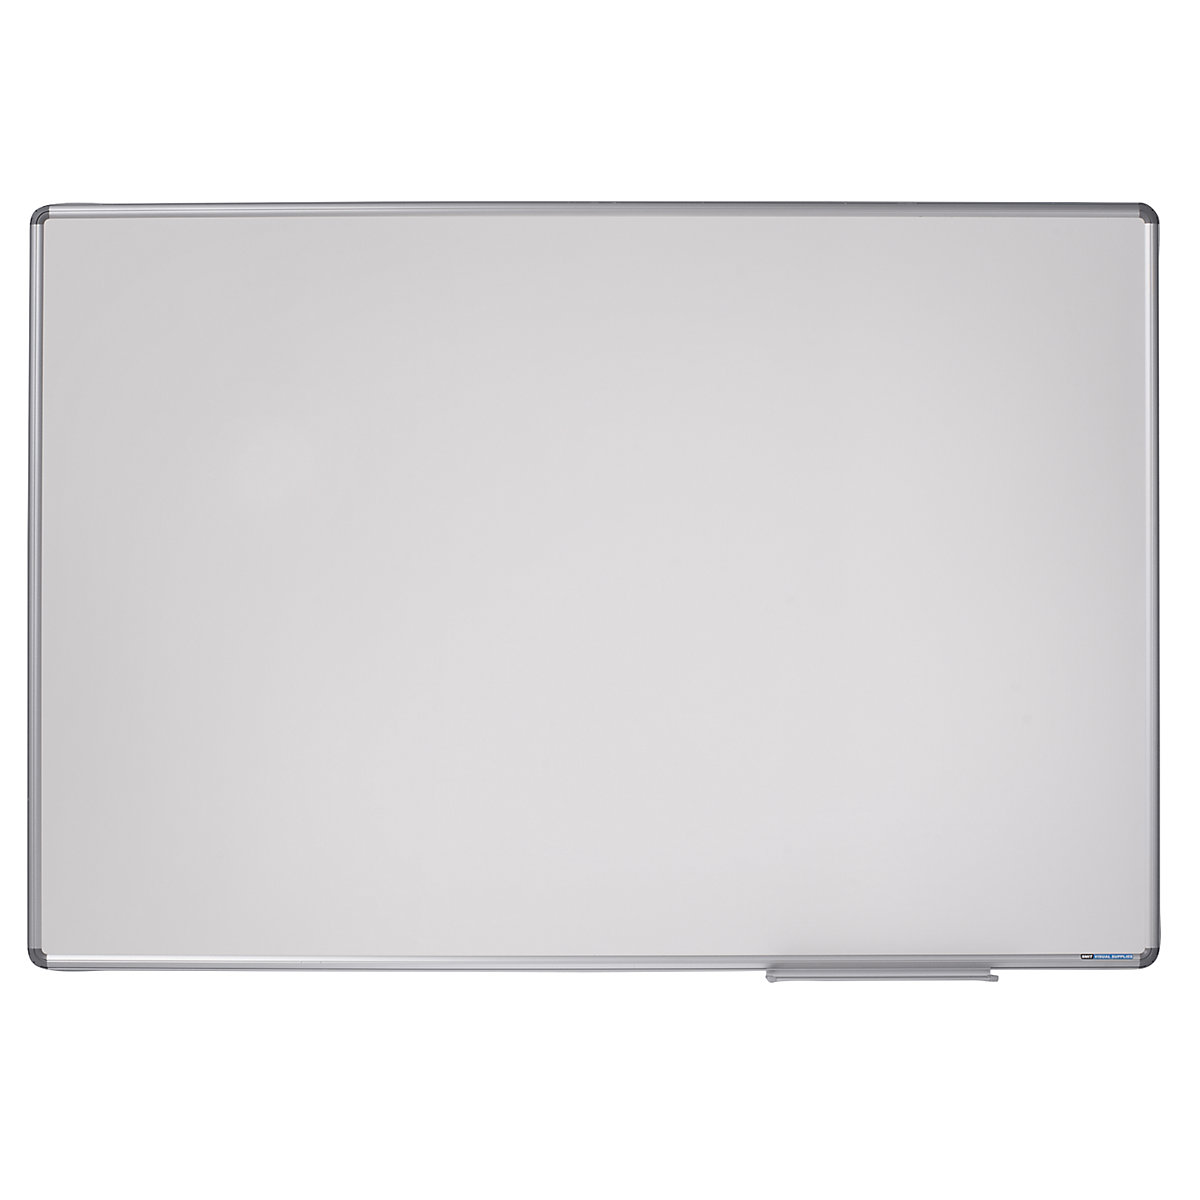 Designerska tablica ścienna – eurokraft pro, blacha stalowa, emaliowana, szer. x wys. 1800 x 1200 mm-11